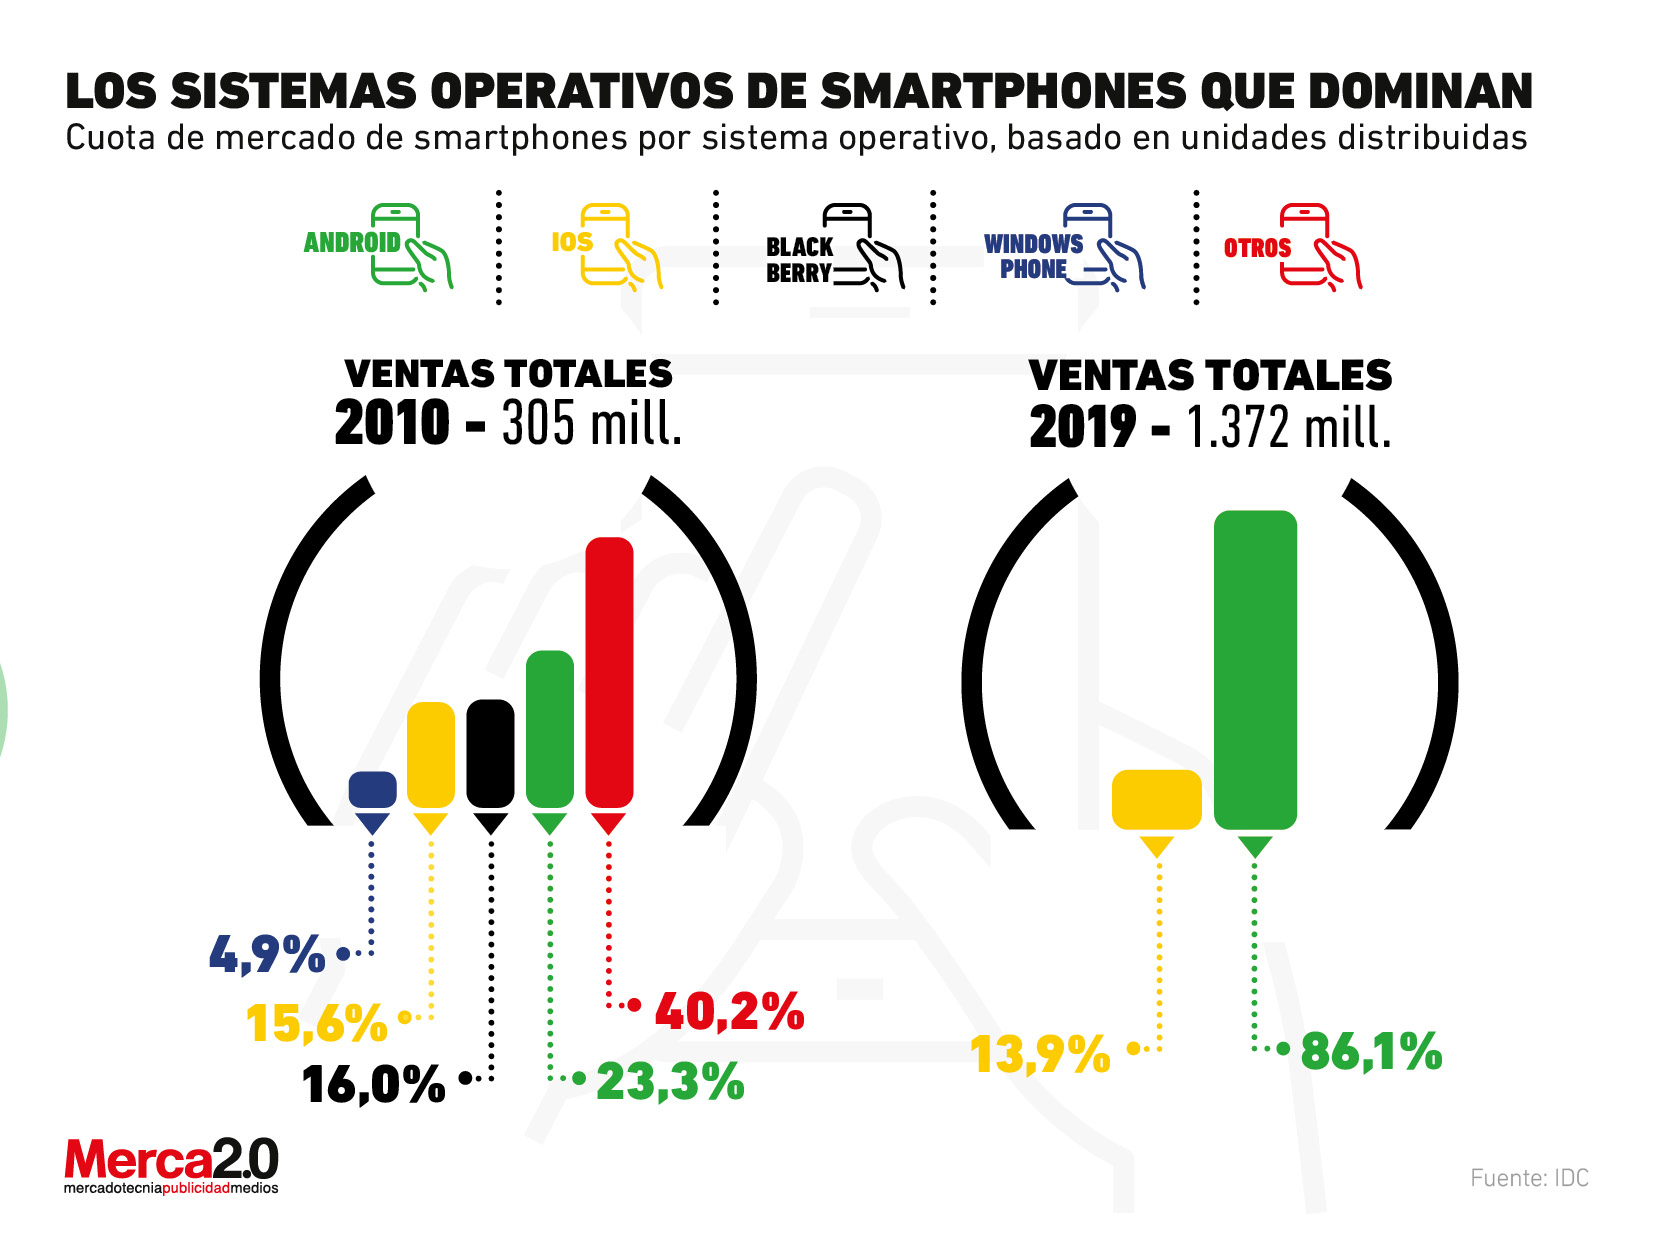 Los sistemas operativos que dominan el mercado de los smartphones